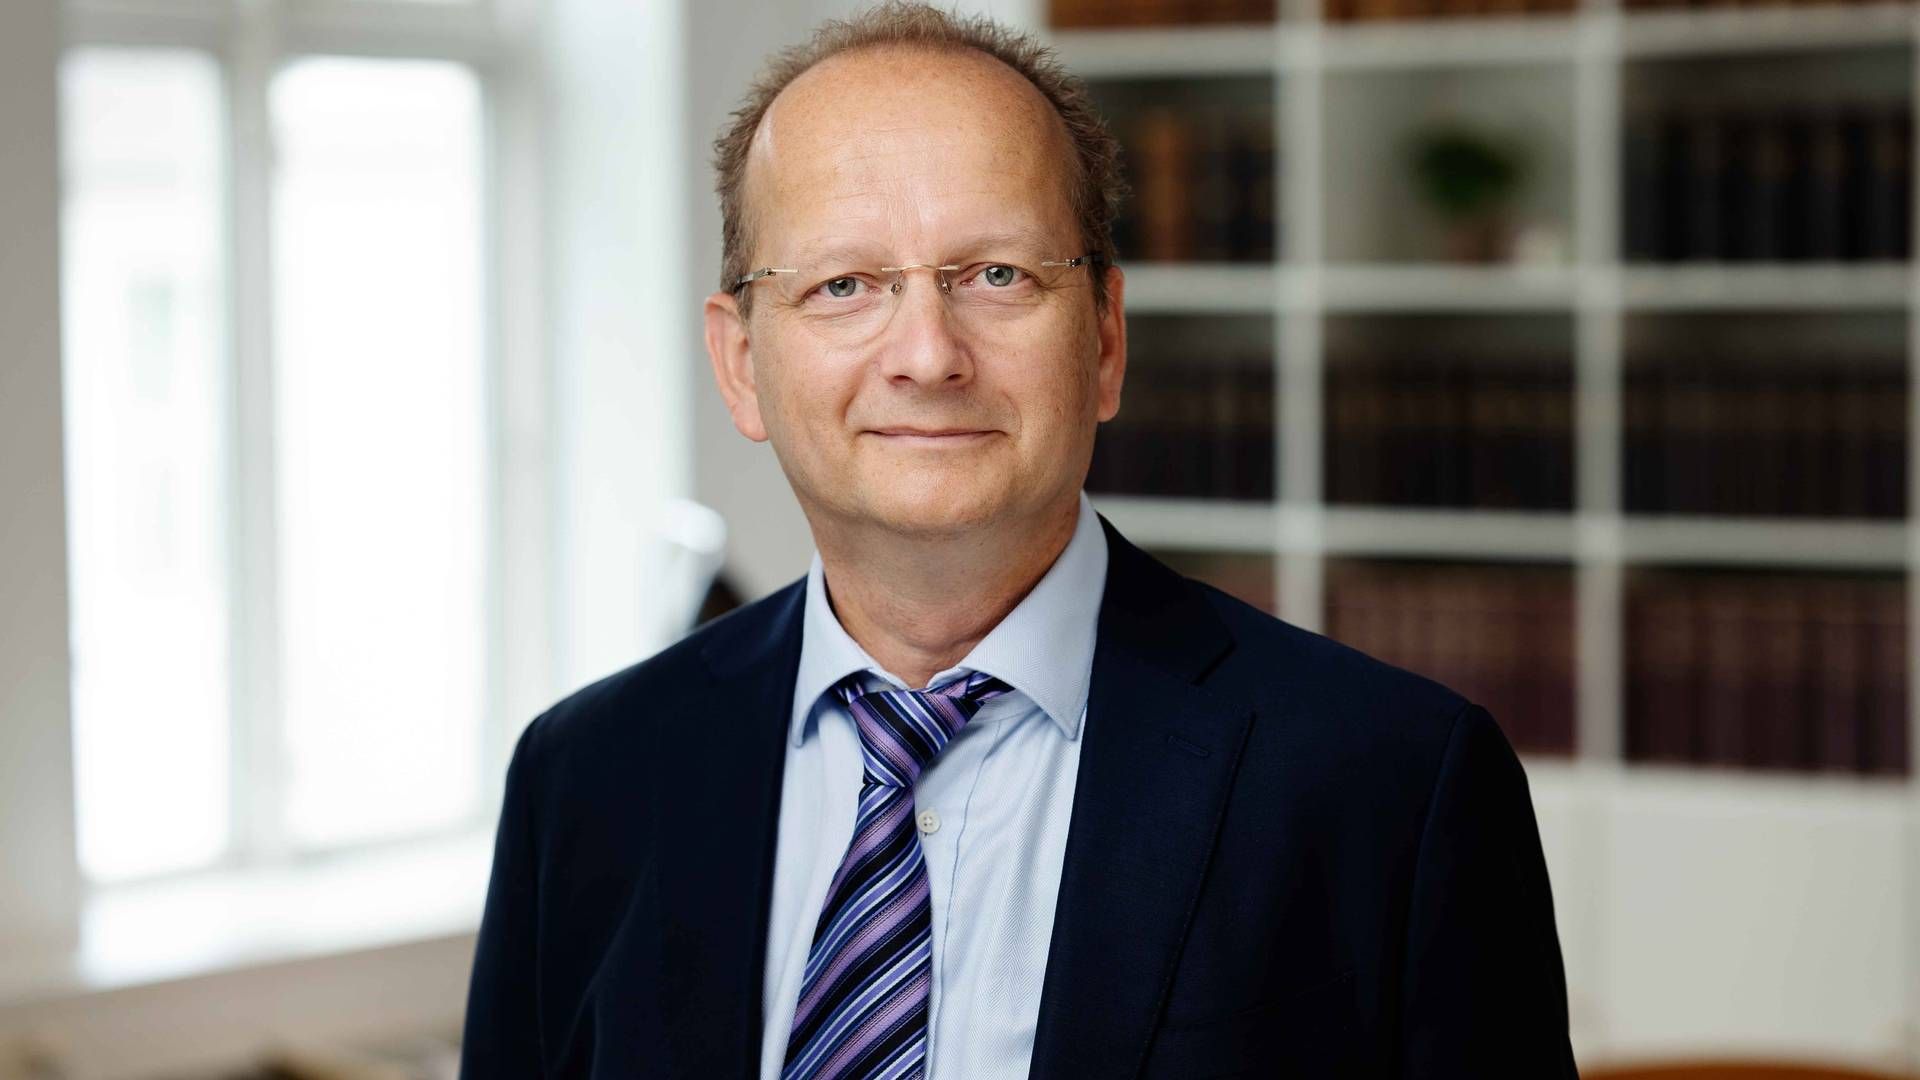 Jacob Strandgaard Andersen er uddannet jurist fra Københavns Universitet i 1997. Han fik ifølge Advokatnøglen sin bestalling i 2003. | Foto: Aumento Advokatfirma / Pr